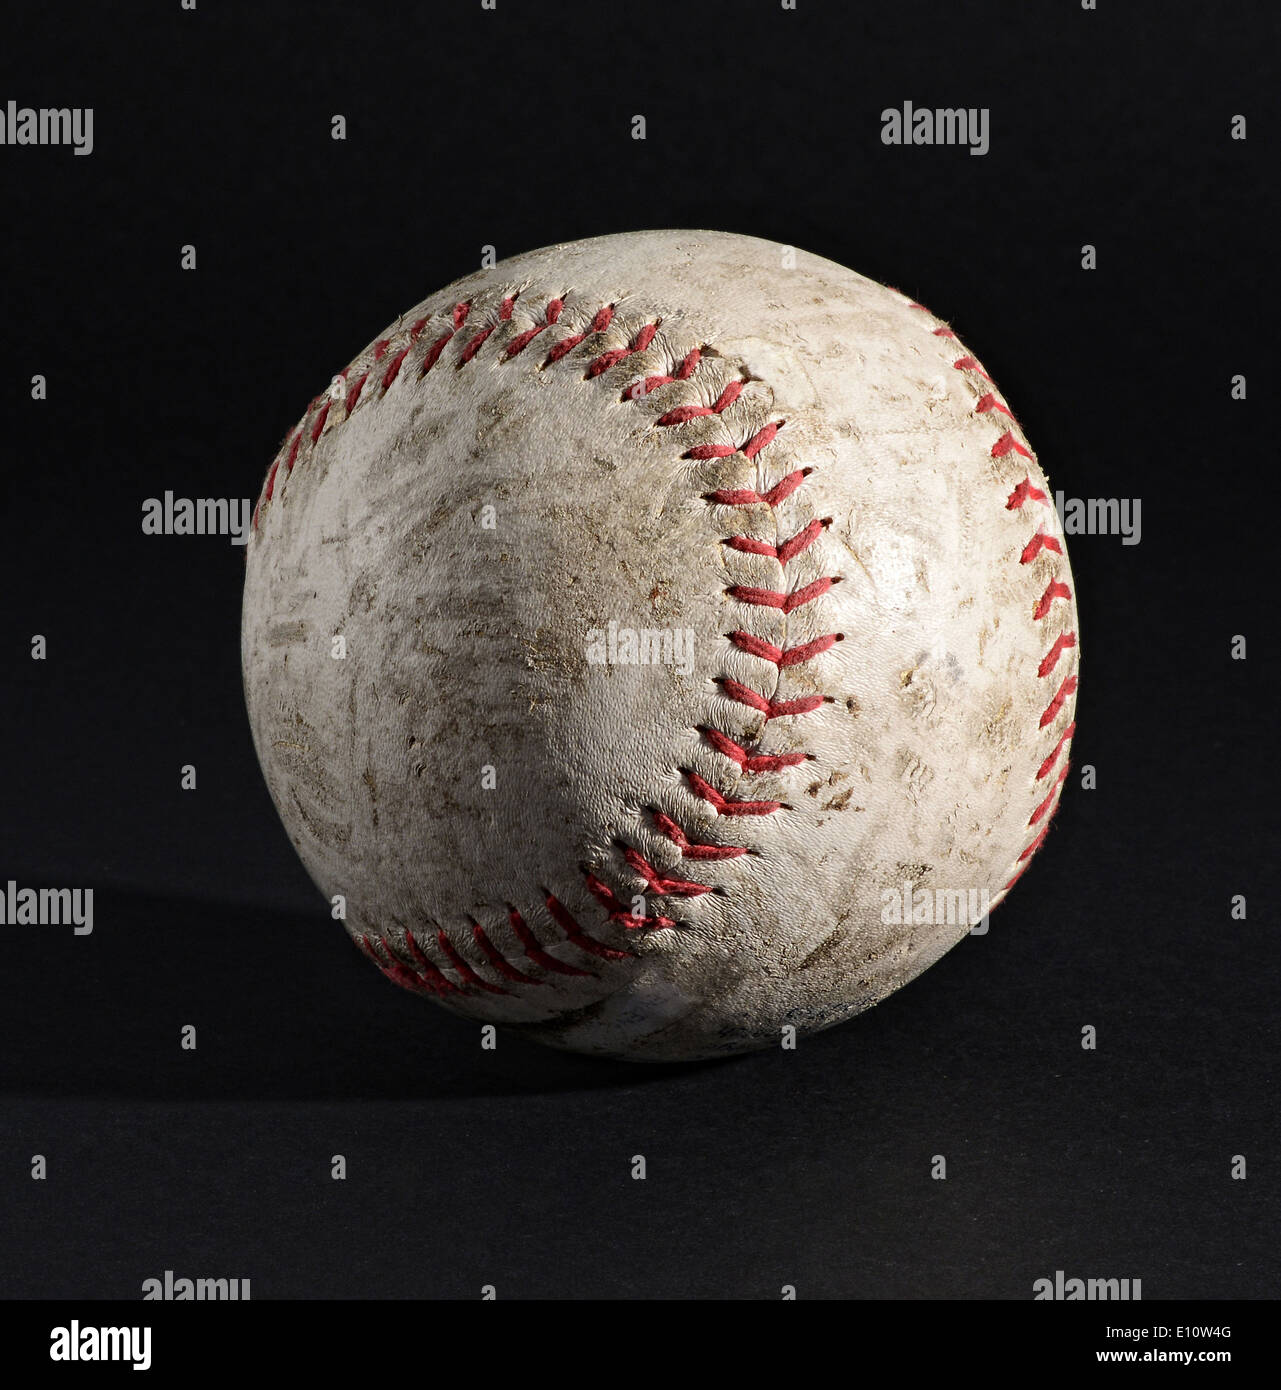 Old leather baseball on black background Stock Photo